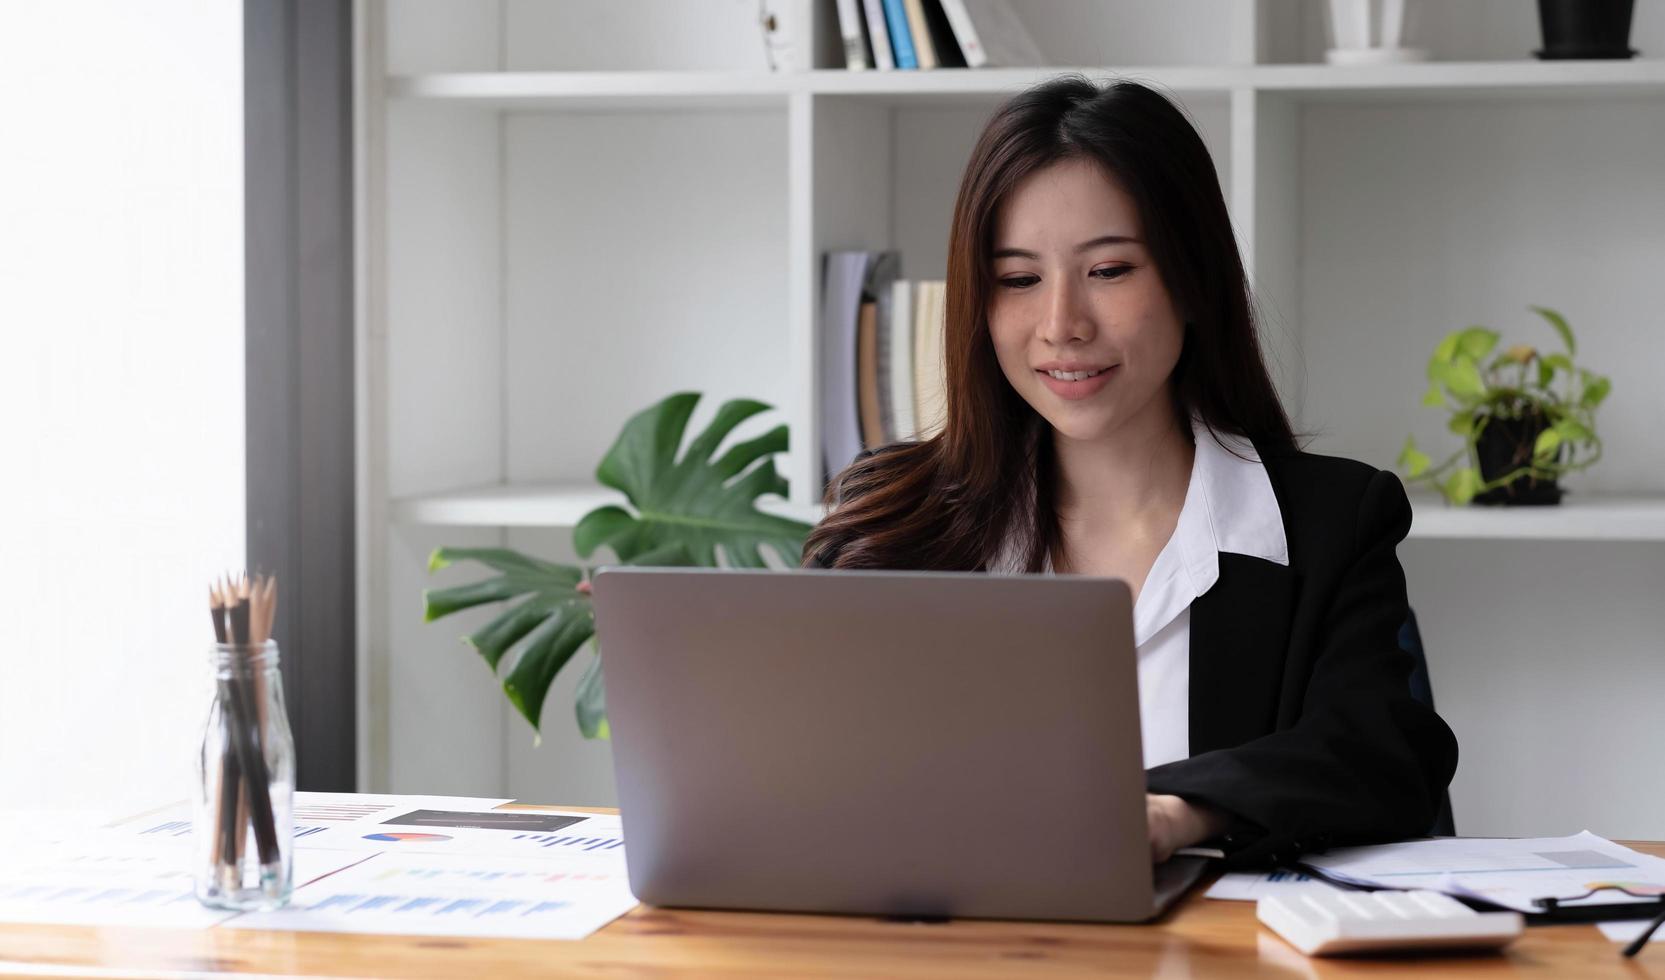 zakelijke Aziatische vrouw die laptop gebruikt om wiskunde te financieren op houten bureau in kantoor, belasting, boekhouding, financieel concept foto